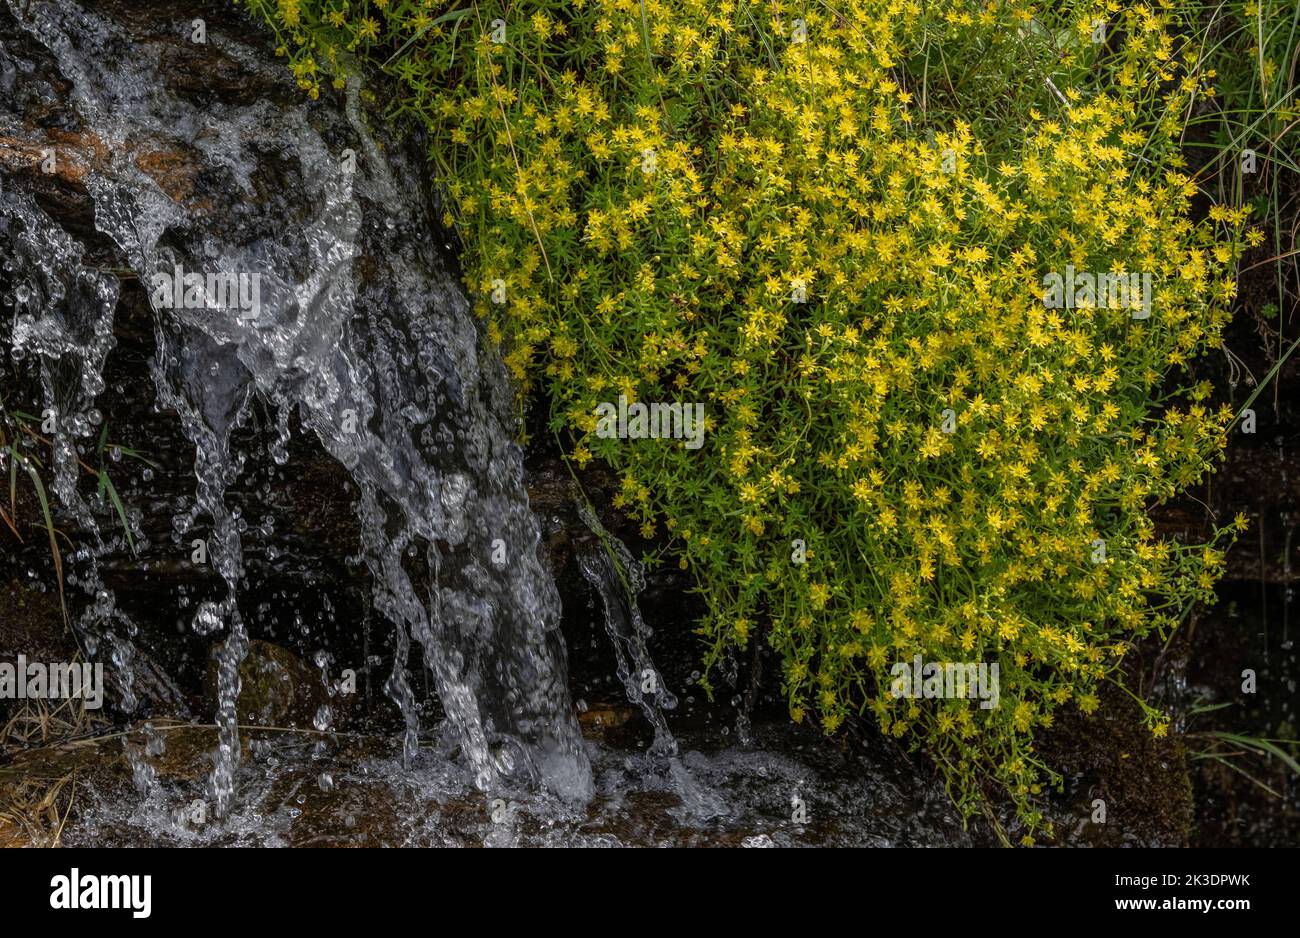 Yellow mountain saxifrage, Saxifraga aizoides, in flower in mountain stream. Italian Alps. Stock Photo